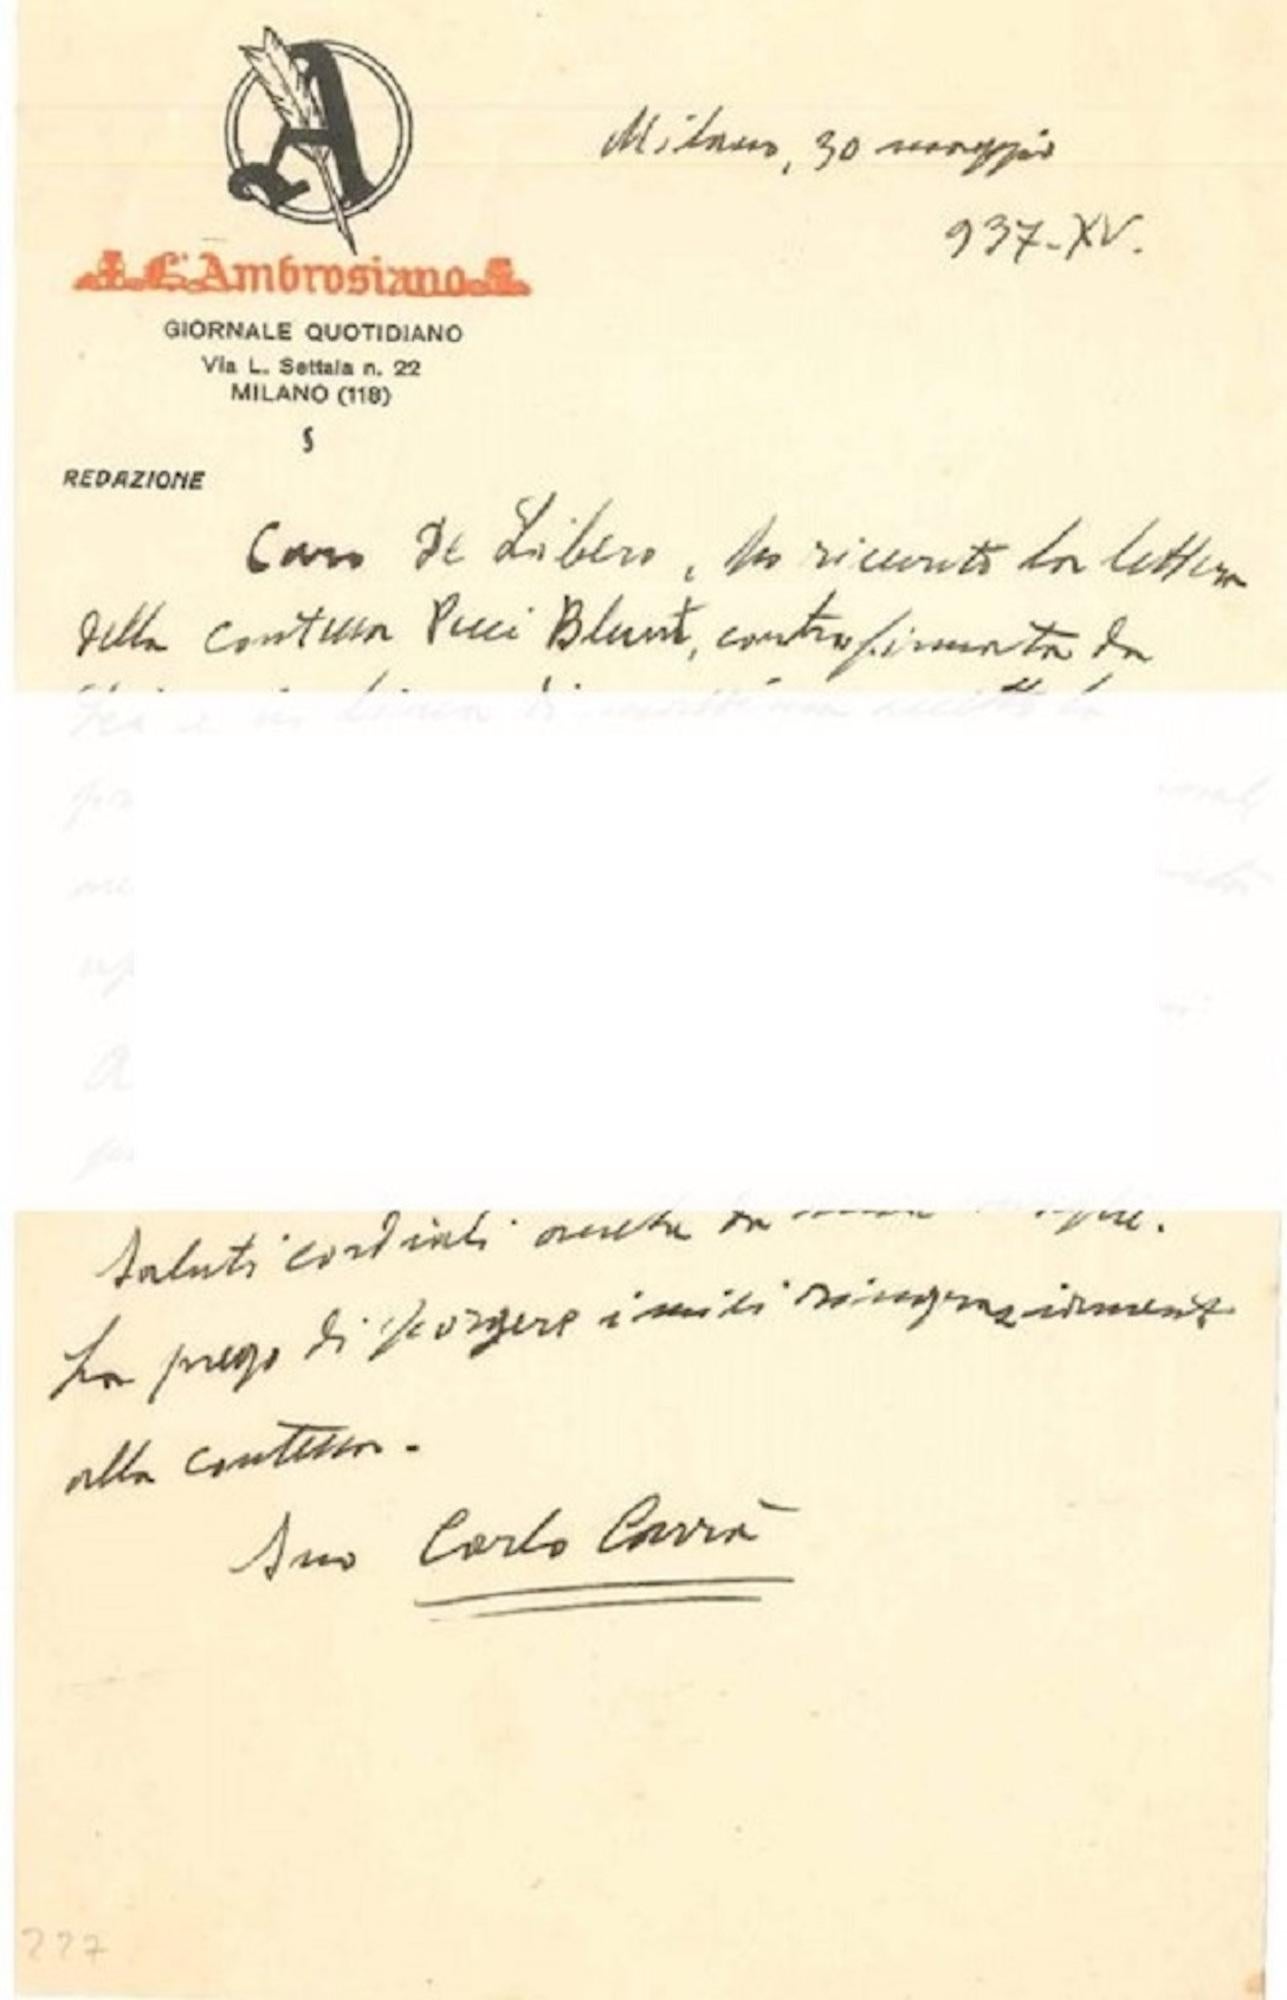 "About the New York Exihibition"- Letter by C. Carrà to L. de Libero - 1937